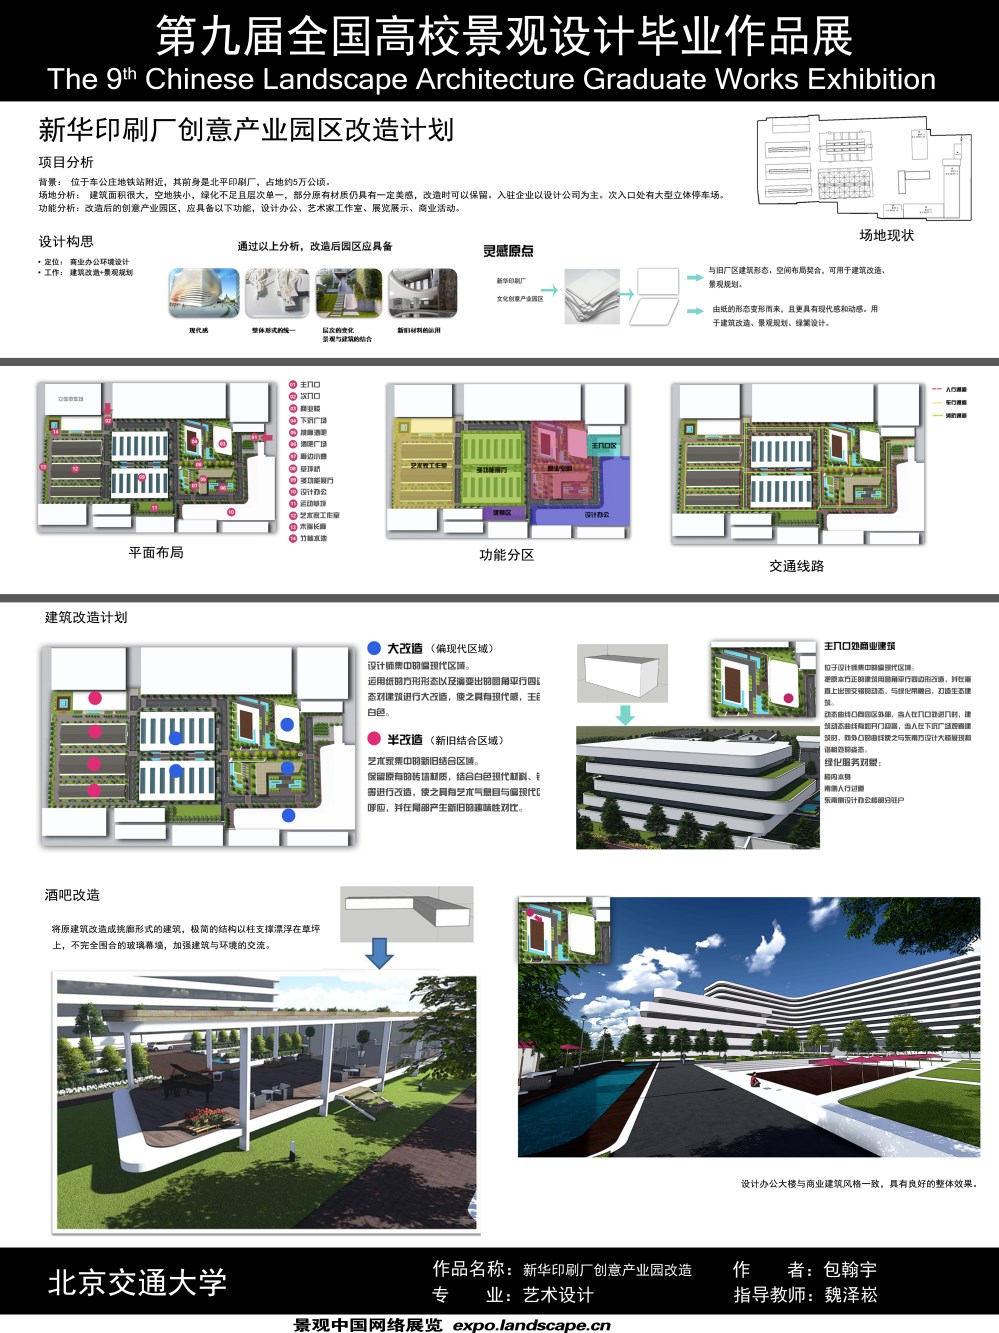 新华印刷厂创意产业园区改造计划-1